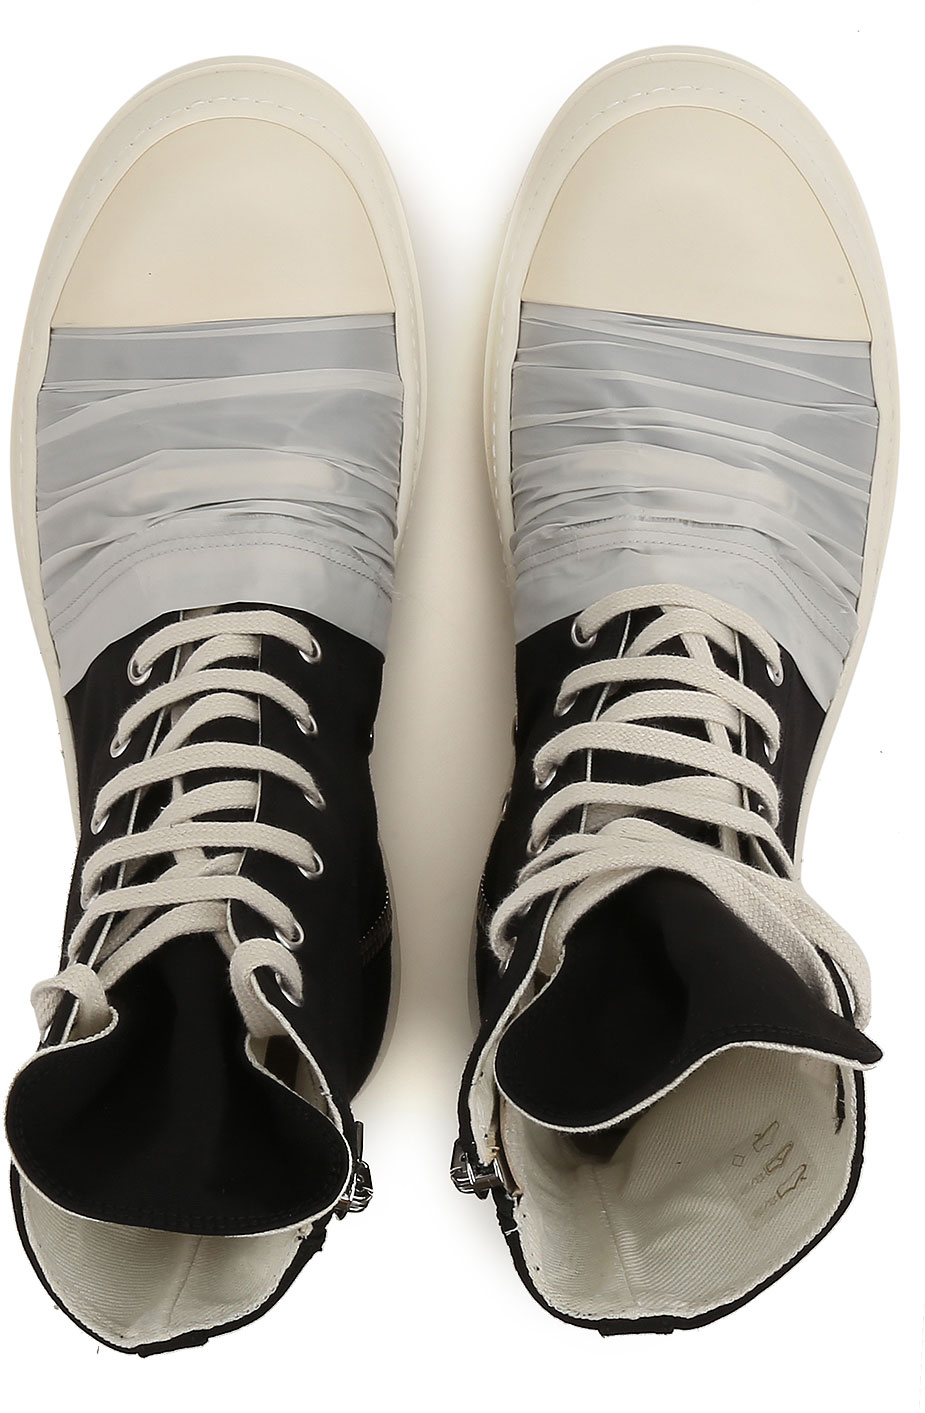 Mens Shoes Rick Owens DRKSHDW, Style code: du17f2800-muevp-981